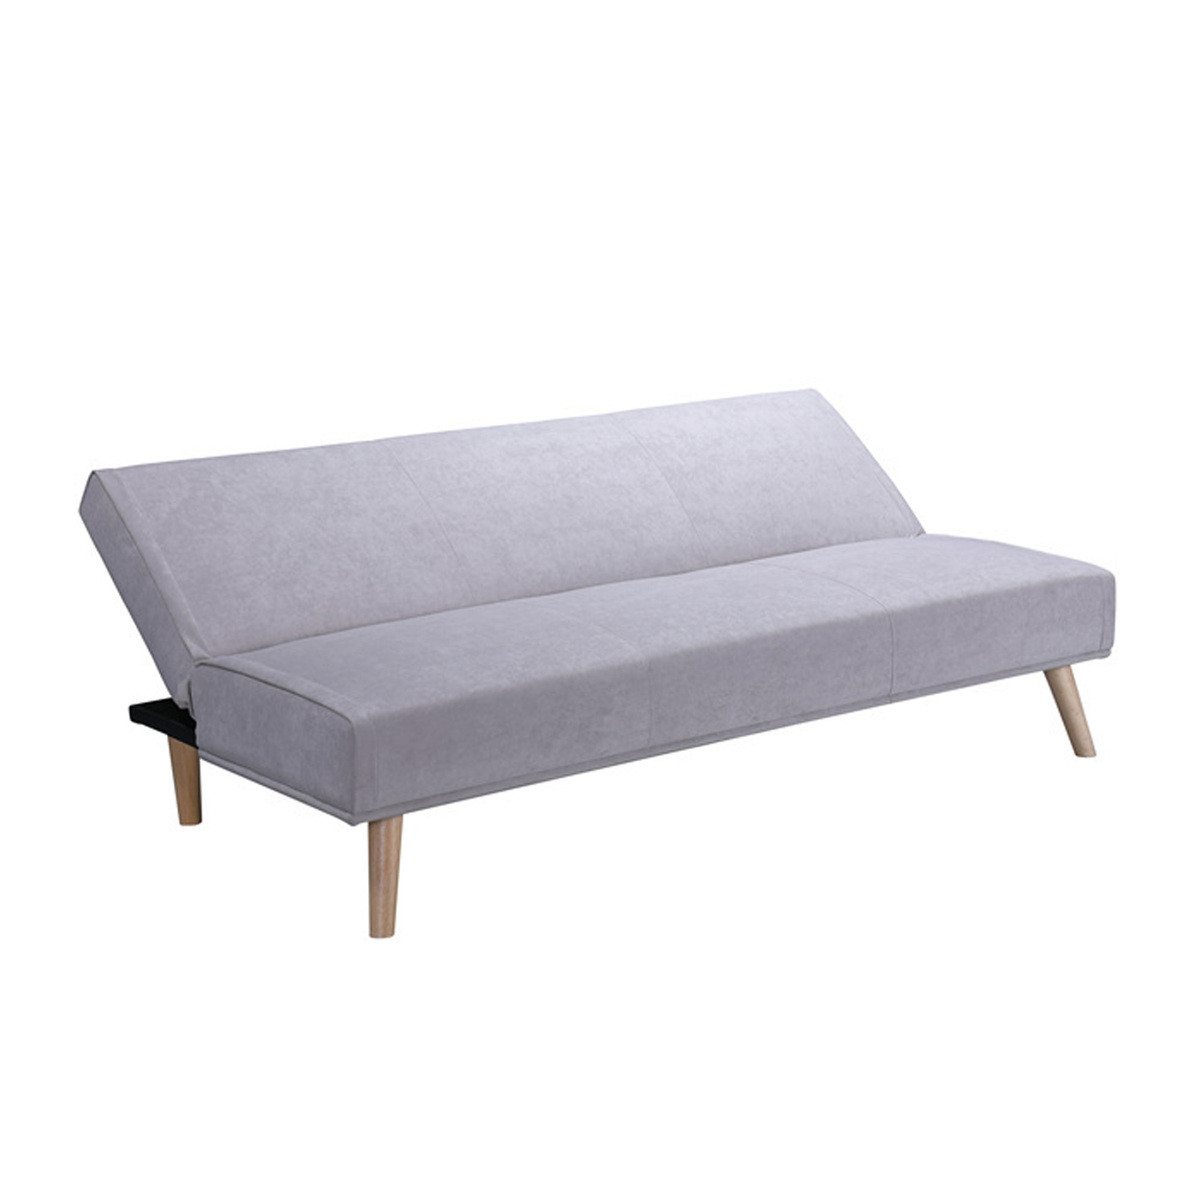 Maple Leaf Fabric Sofa Bed XL-1370 Grey